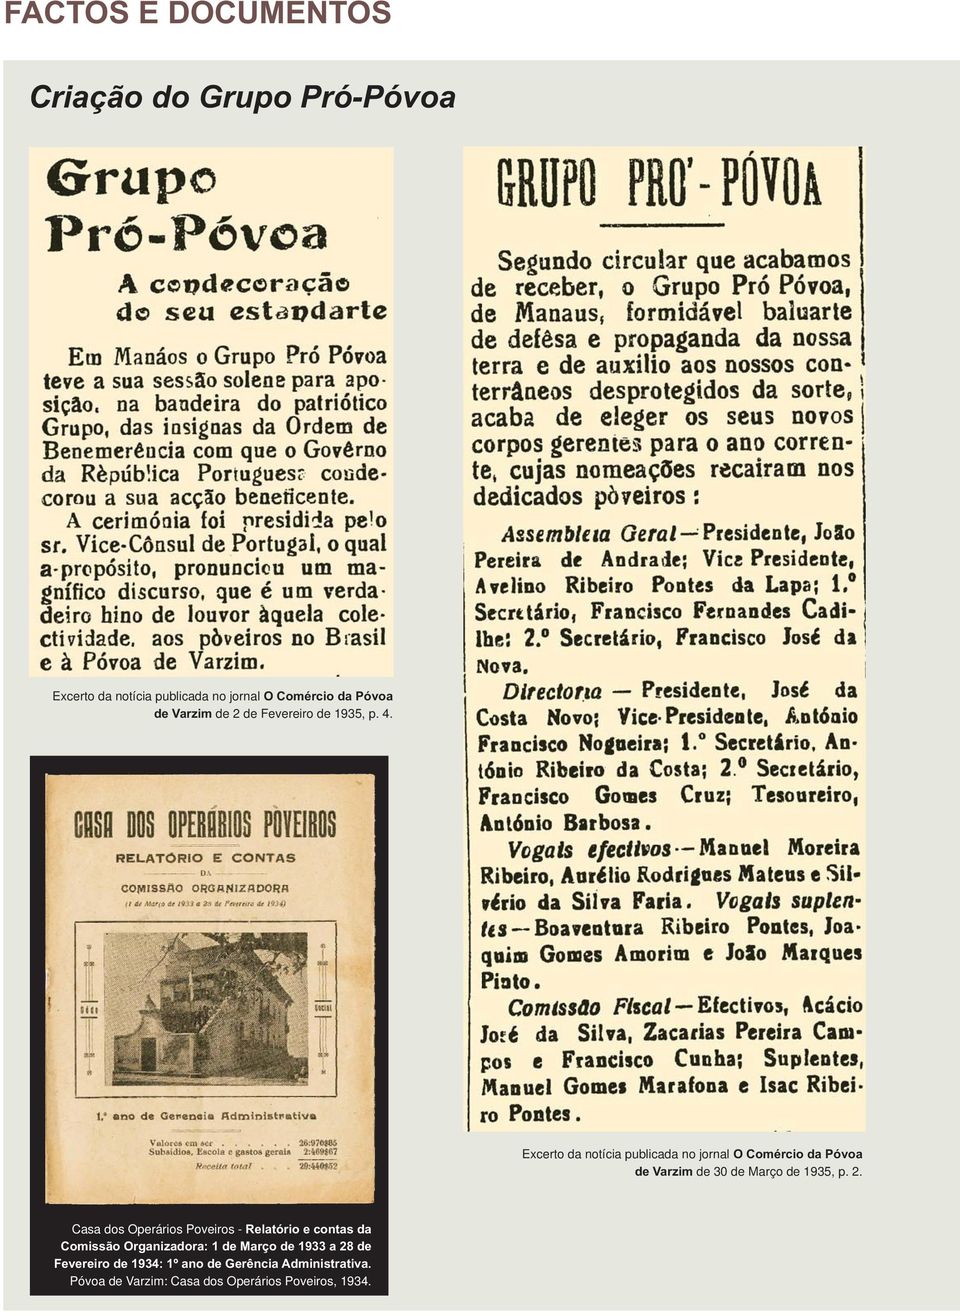 Excerto da notícia publicada no jornal O Comércio da Póvoa de Varzim de 30 de Março de 1935, p. 2.